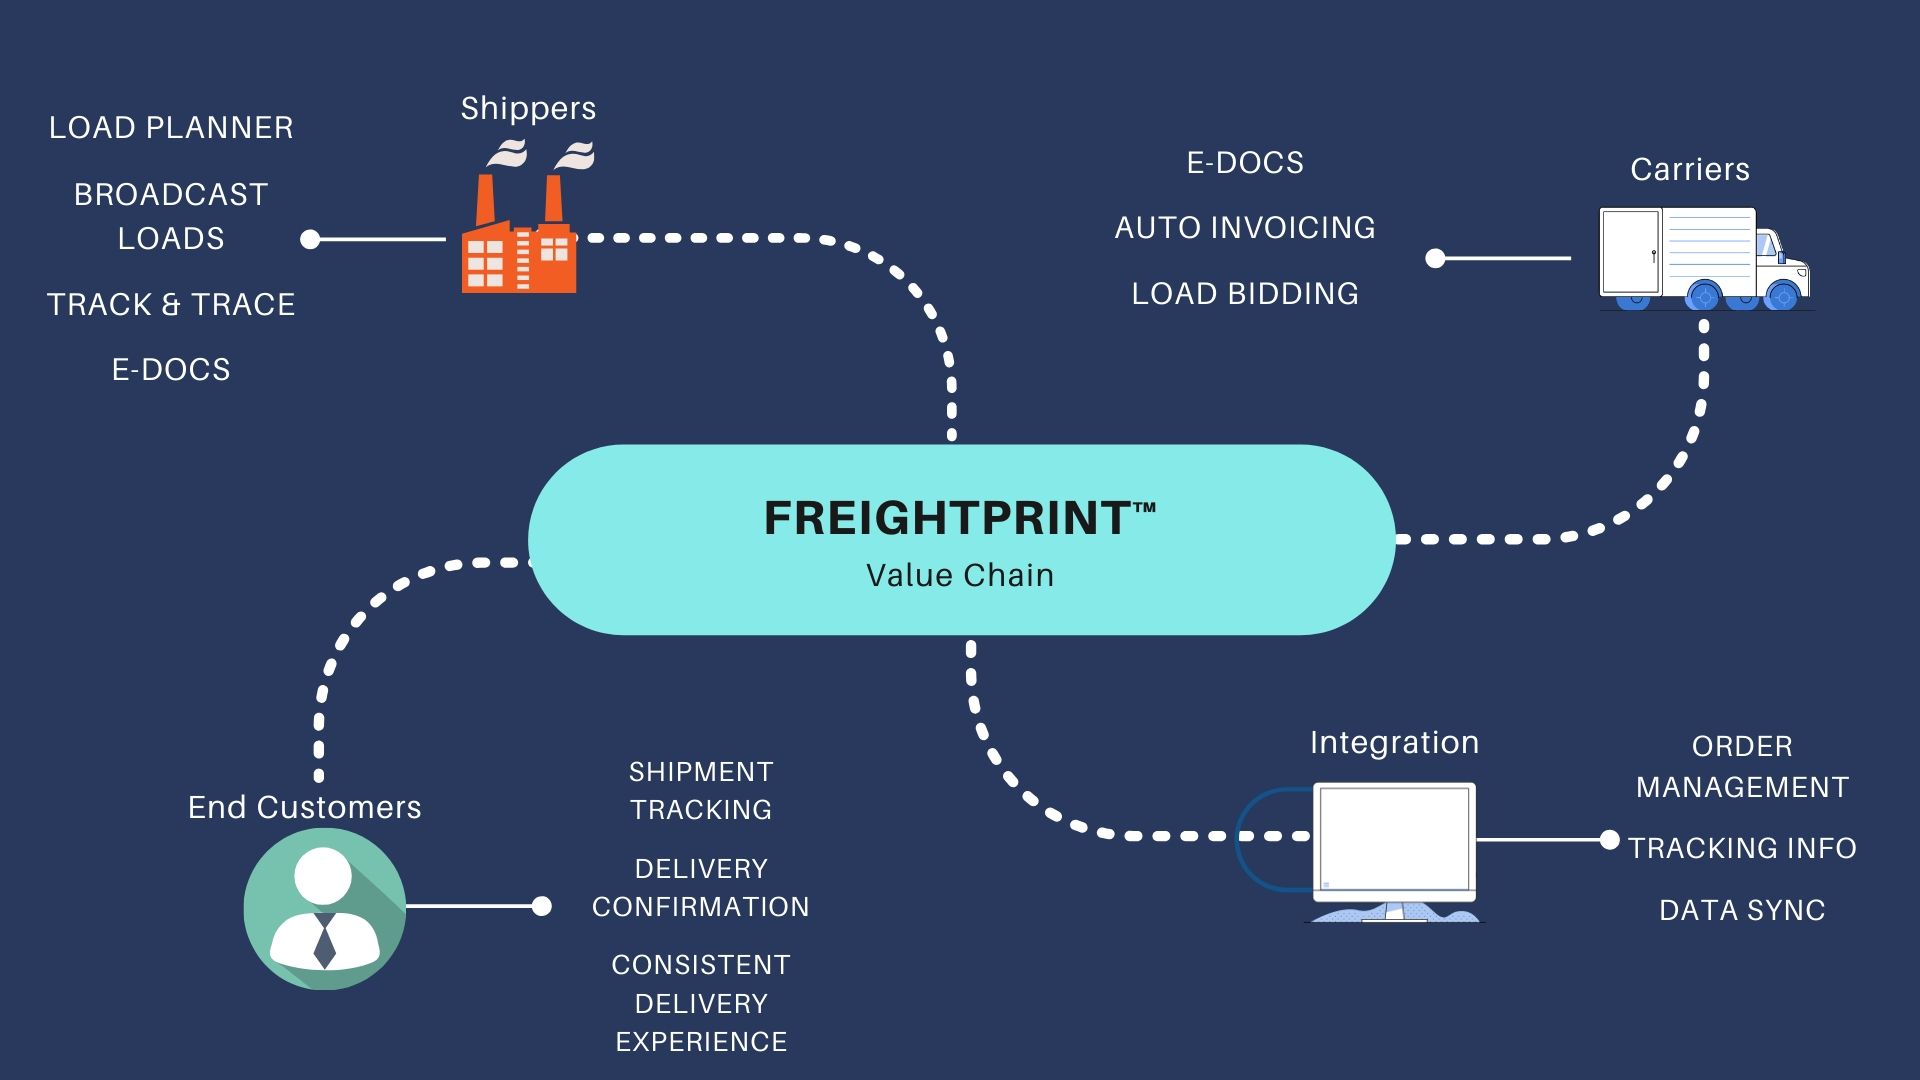 https://freightprint.com/blog/view/u/intuitive-load-planner